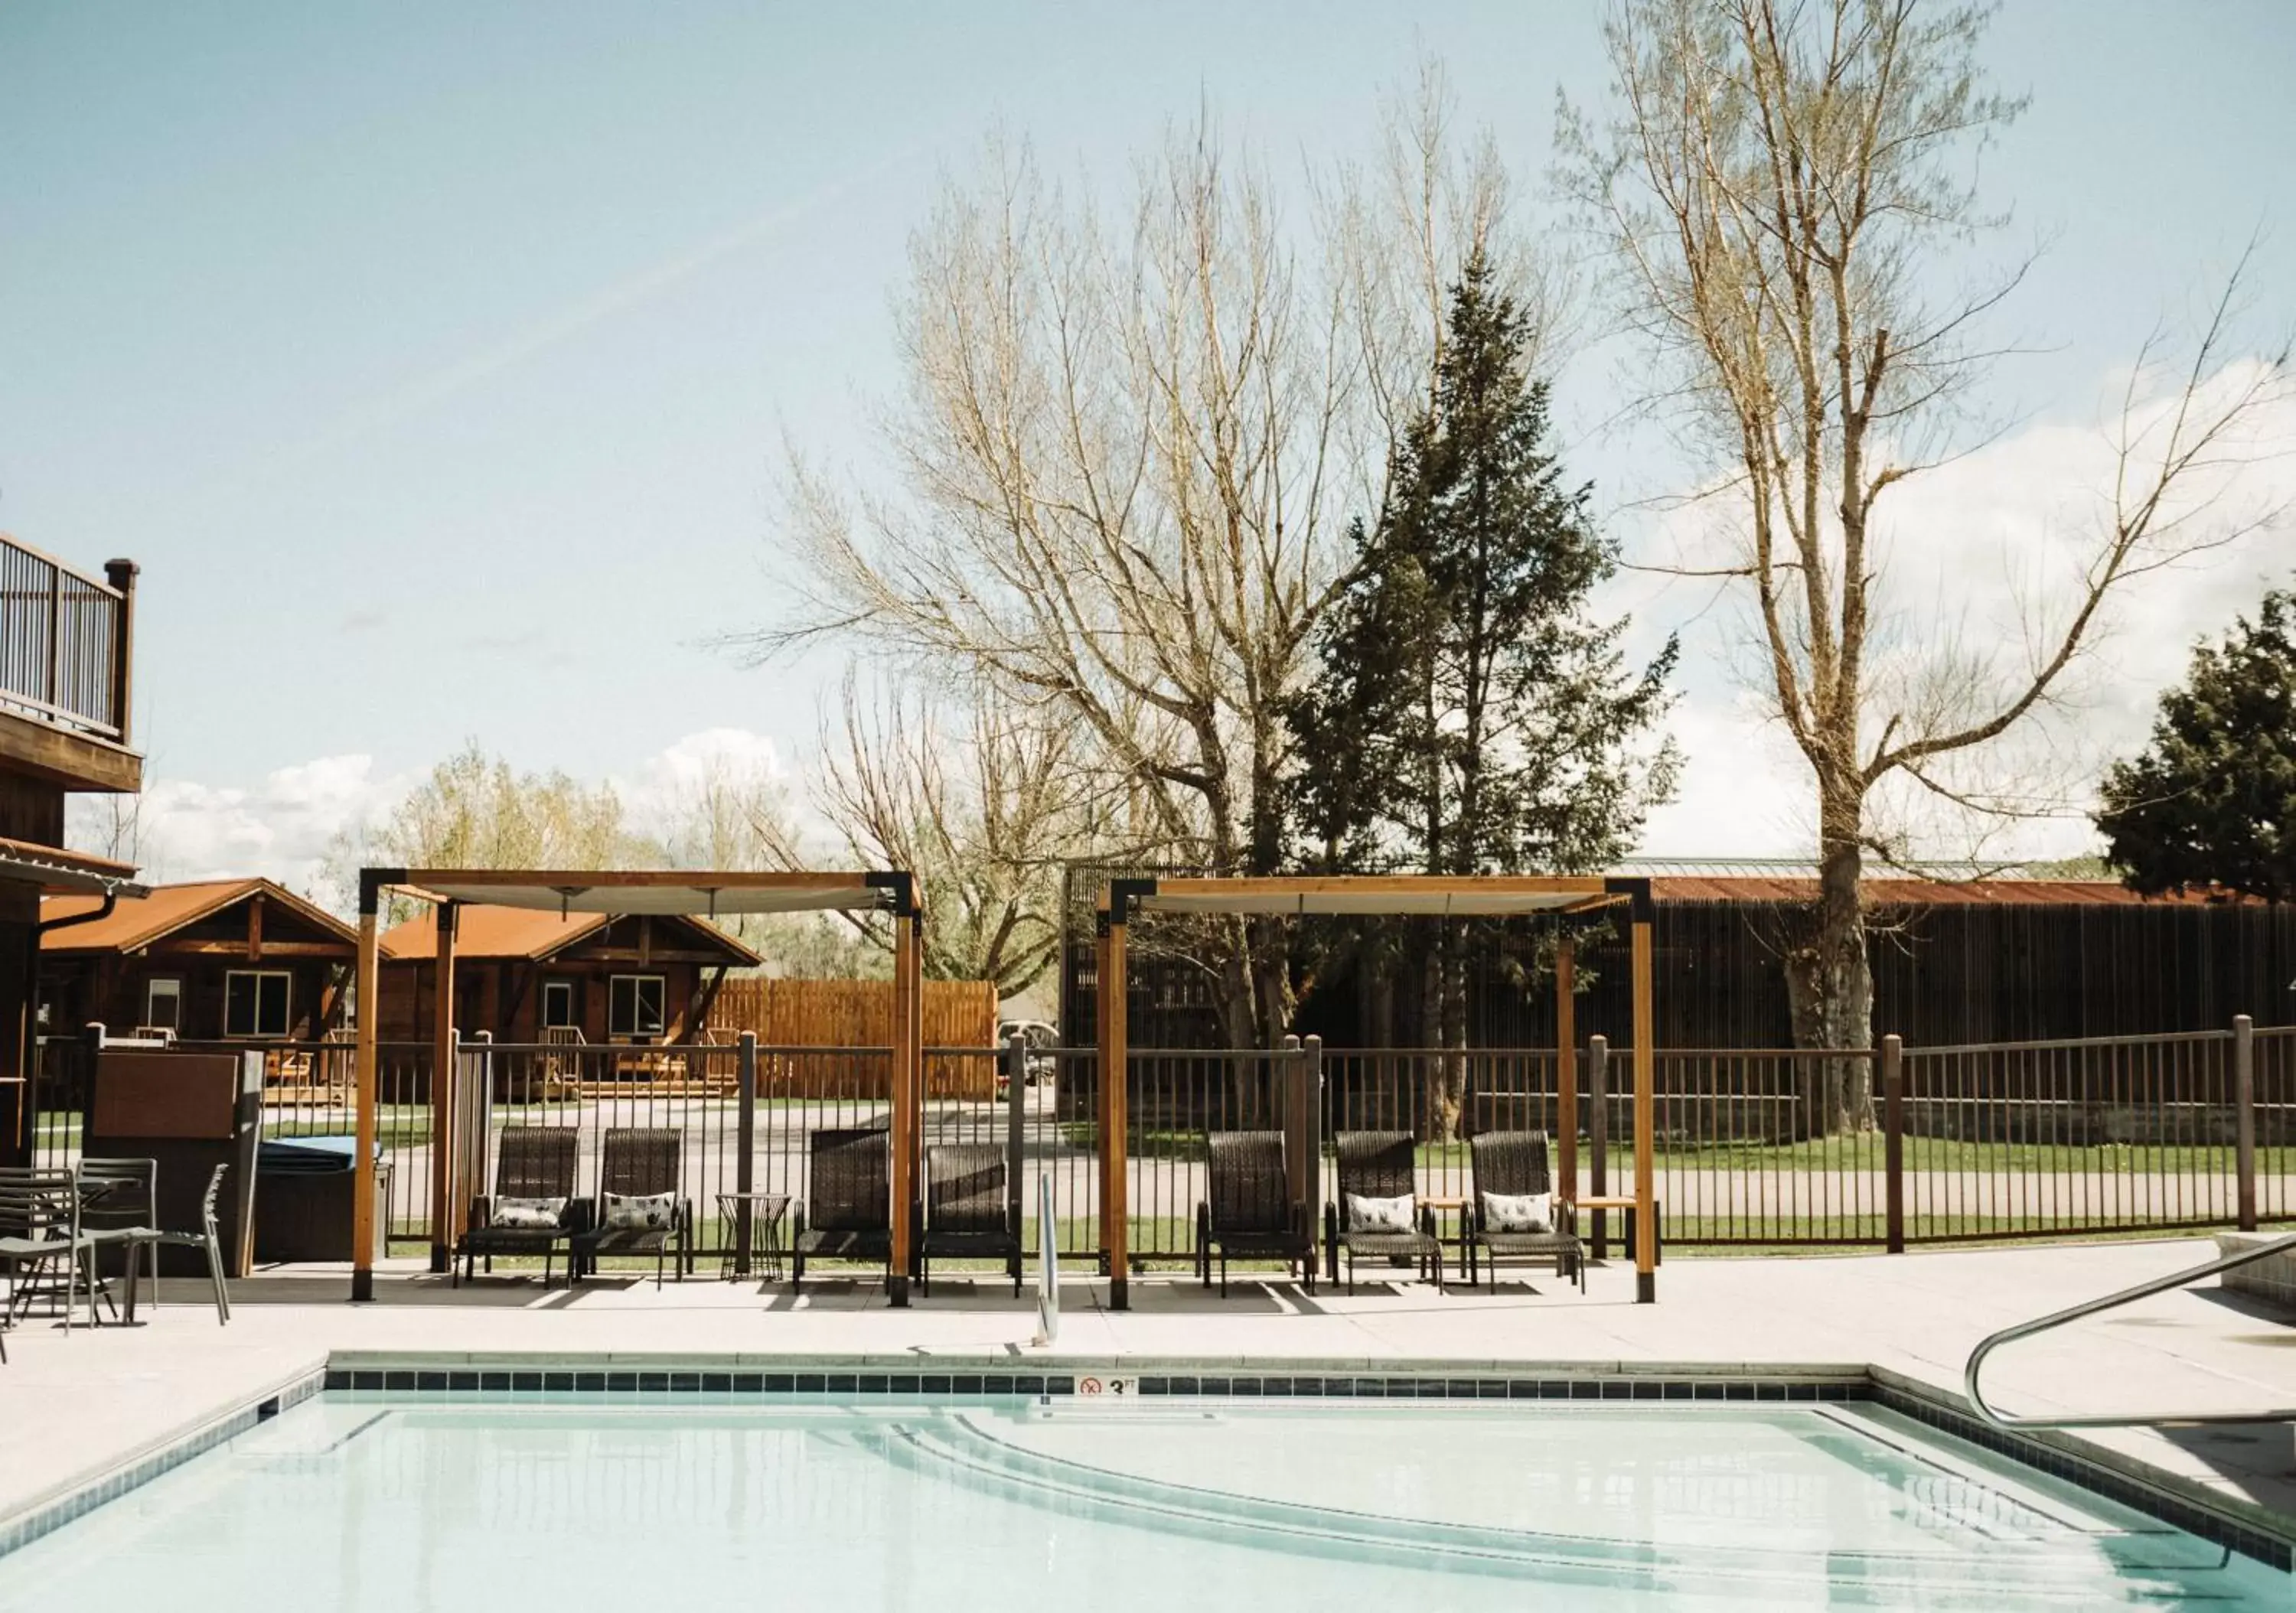 Swimming Pool in Teton Valley Resort